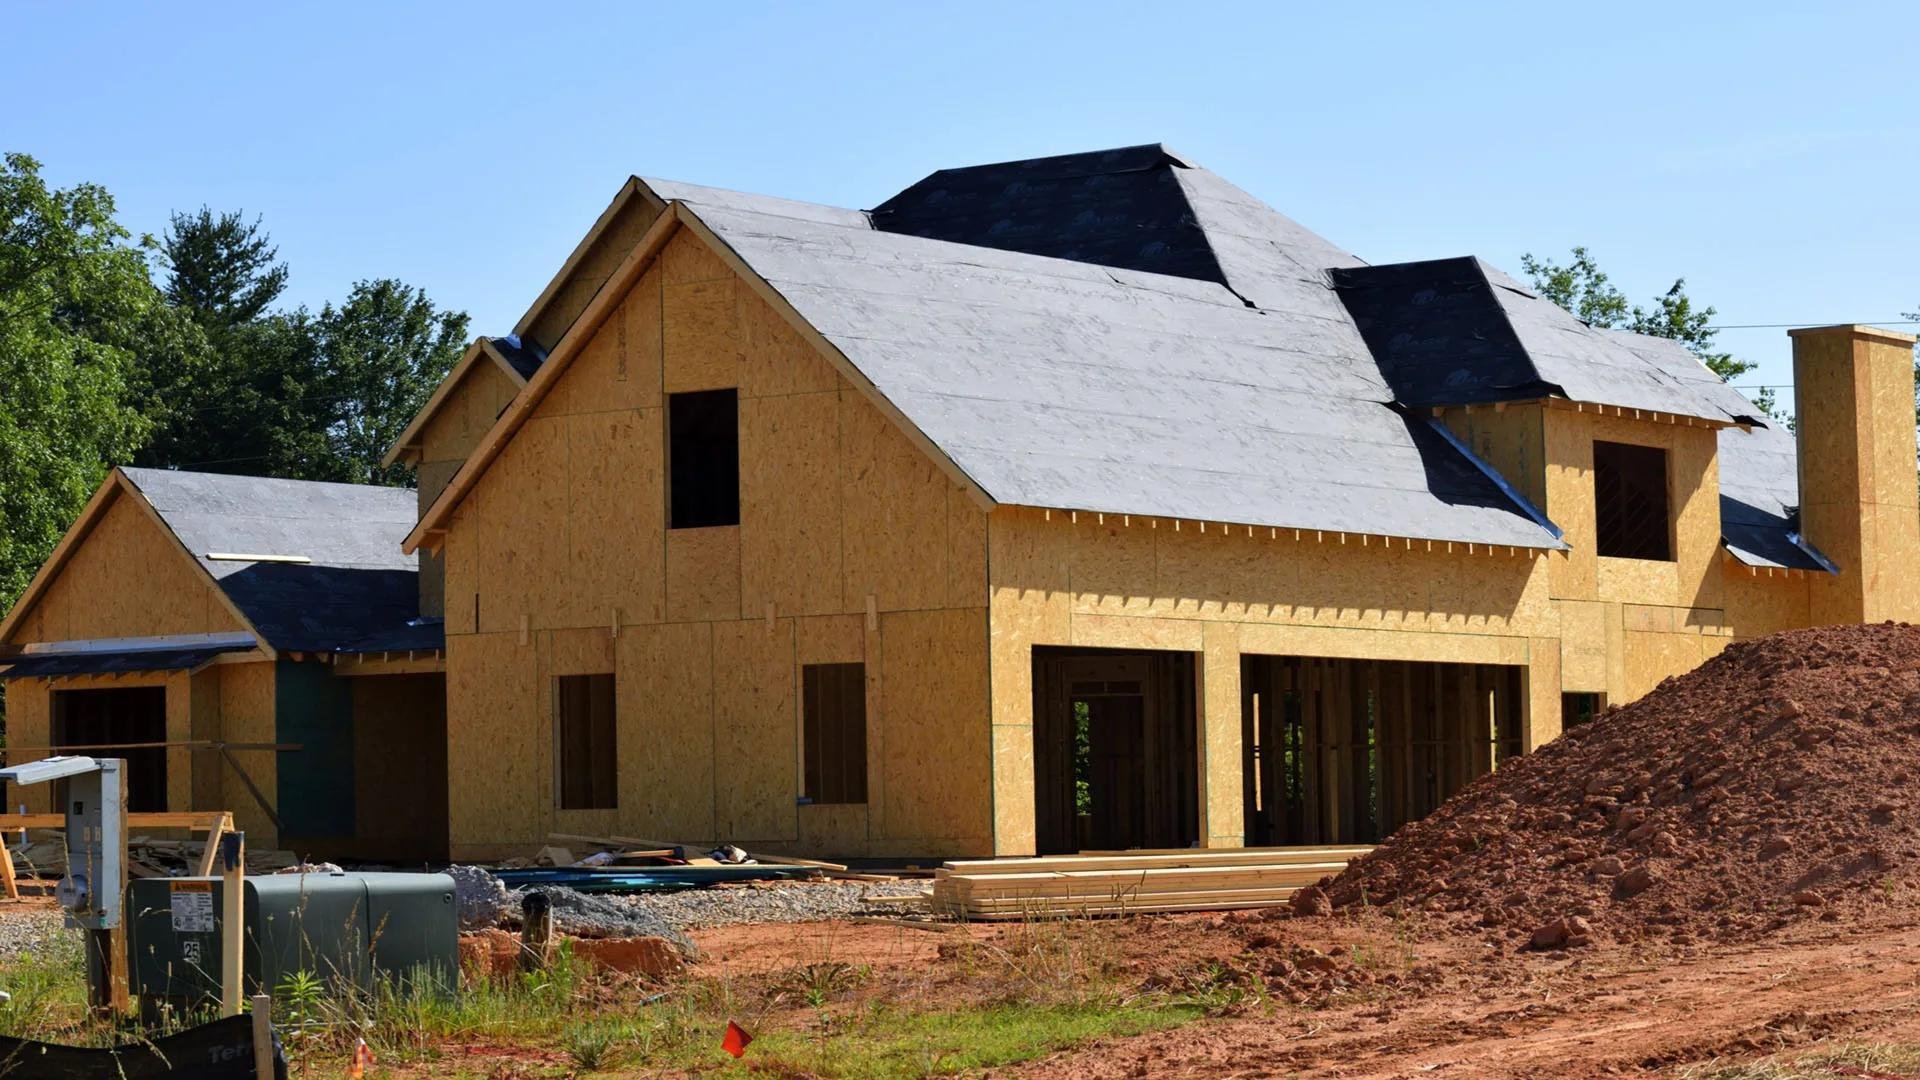 Строительство дома может быть дорогостоящим делом, но есть способы минимизировать расходы и сделать процесс более доступным